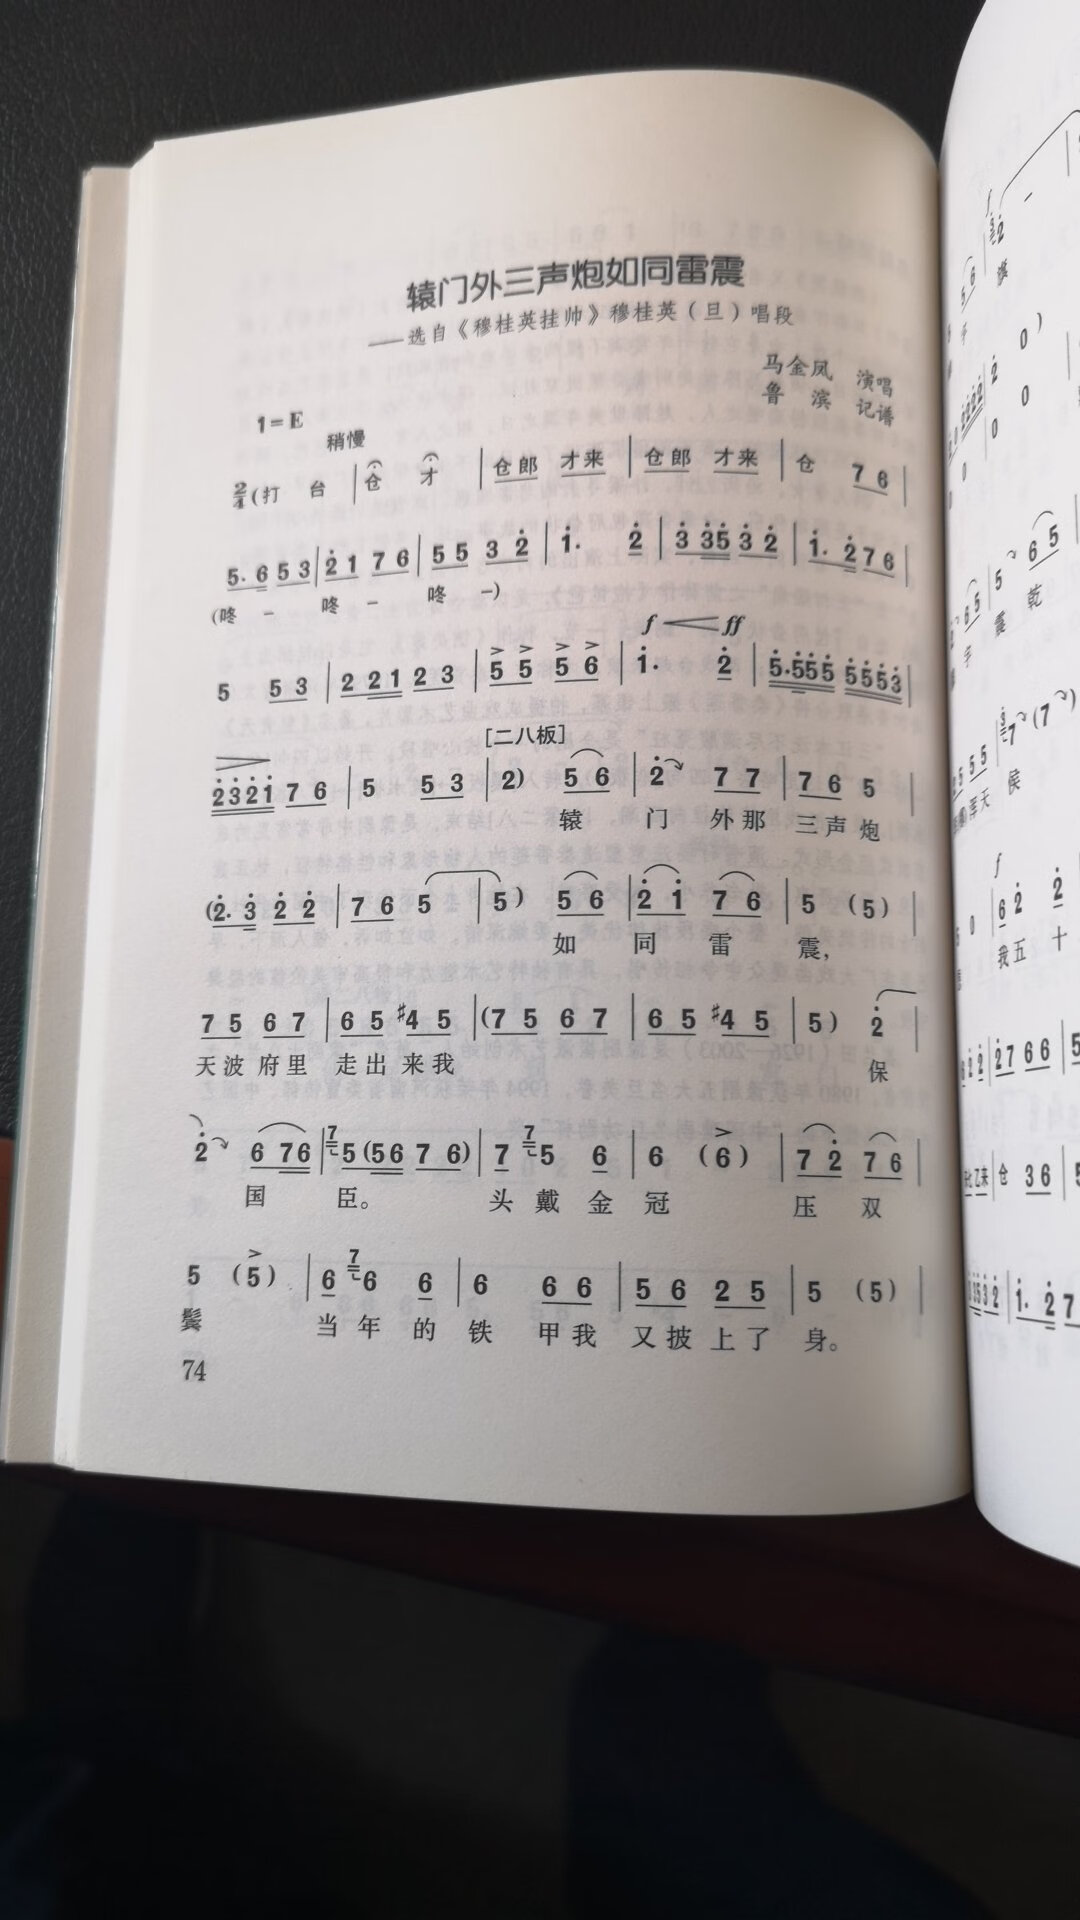 喜欢豫剧，这本是作为资料保存的，内收录了不少传统戏经典唱段。开本稍小，印刷中规中矩。